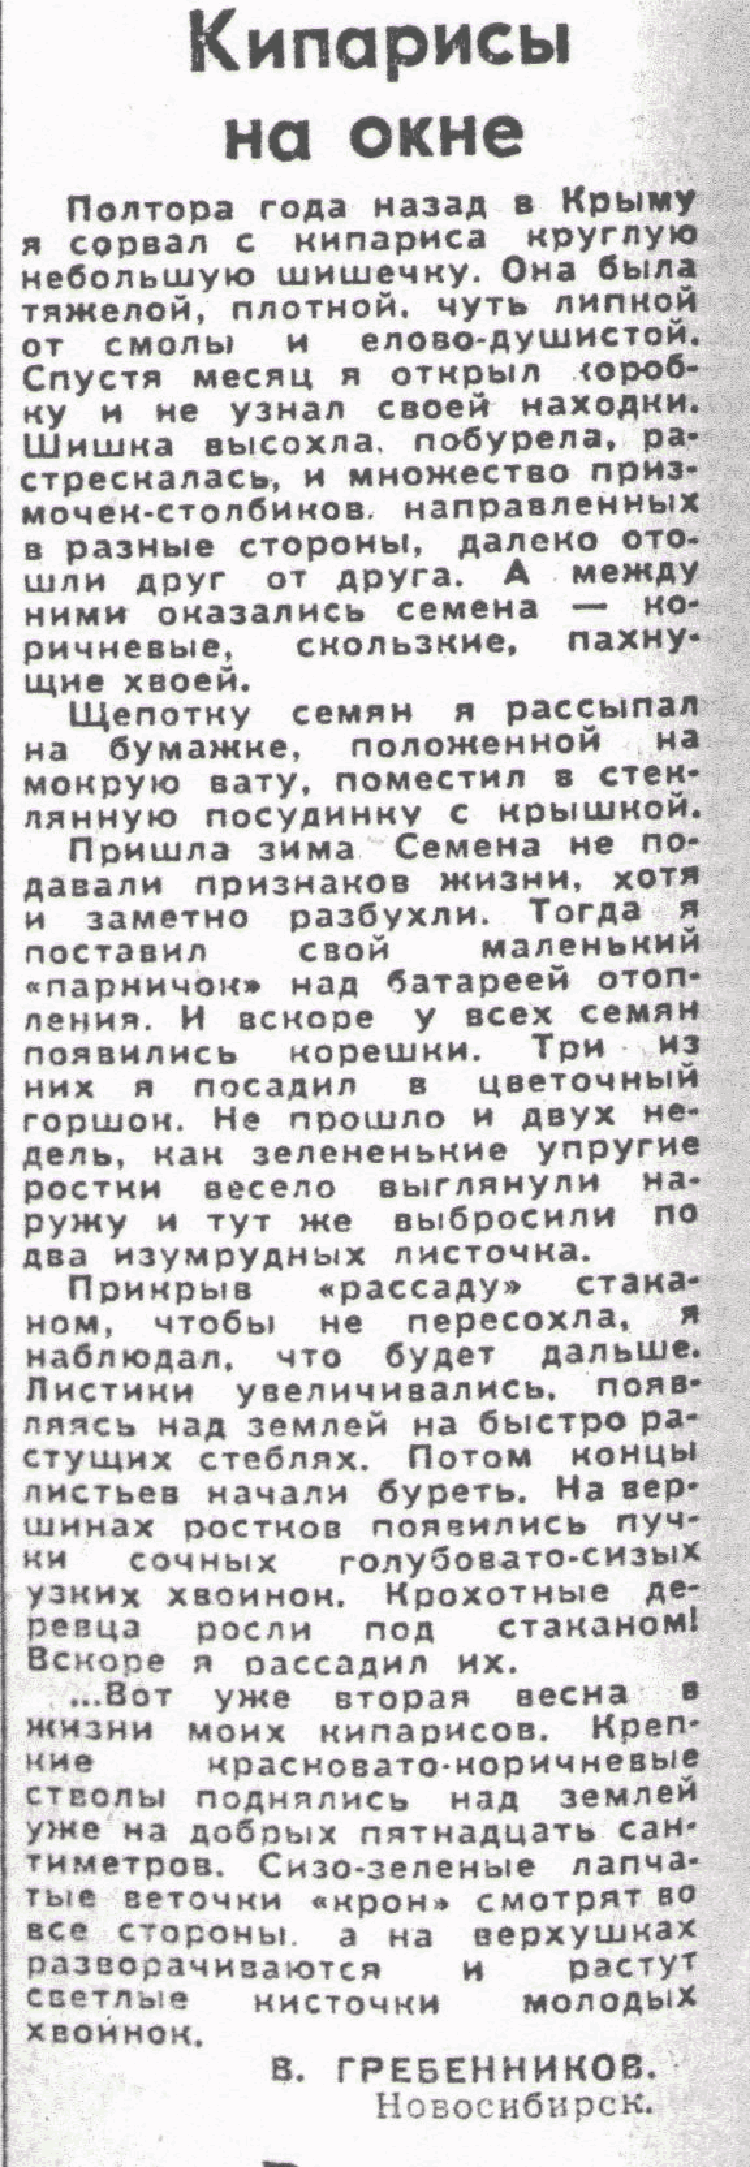 Кипарисы на окне. В.С. Гребенников. Сельская жизнь, 08.04.1980.